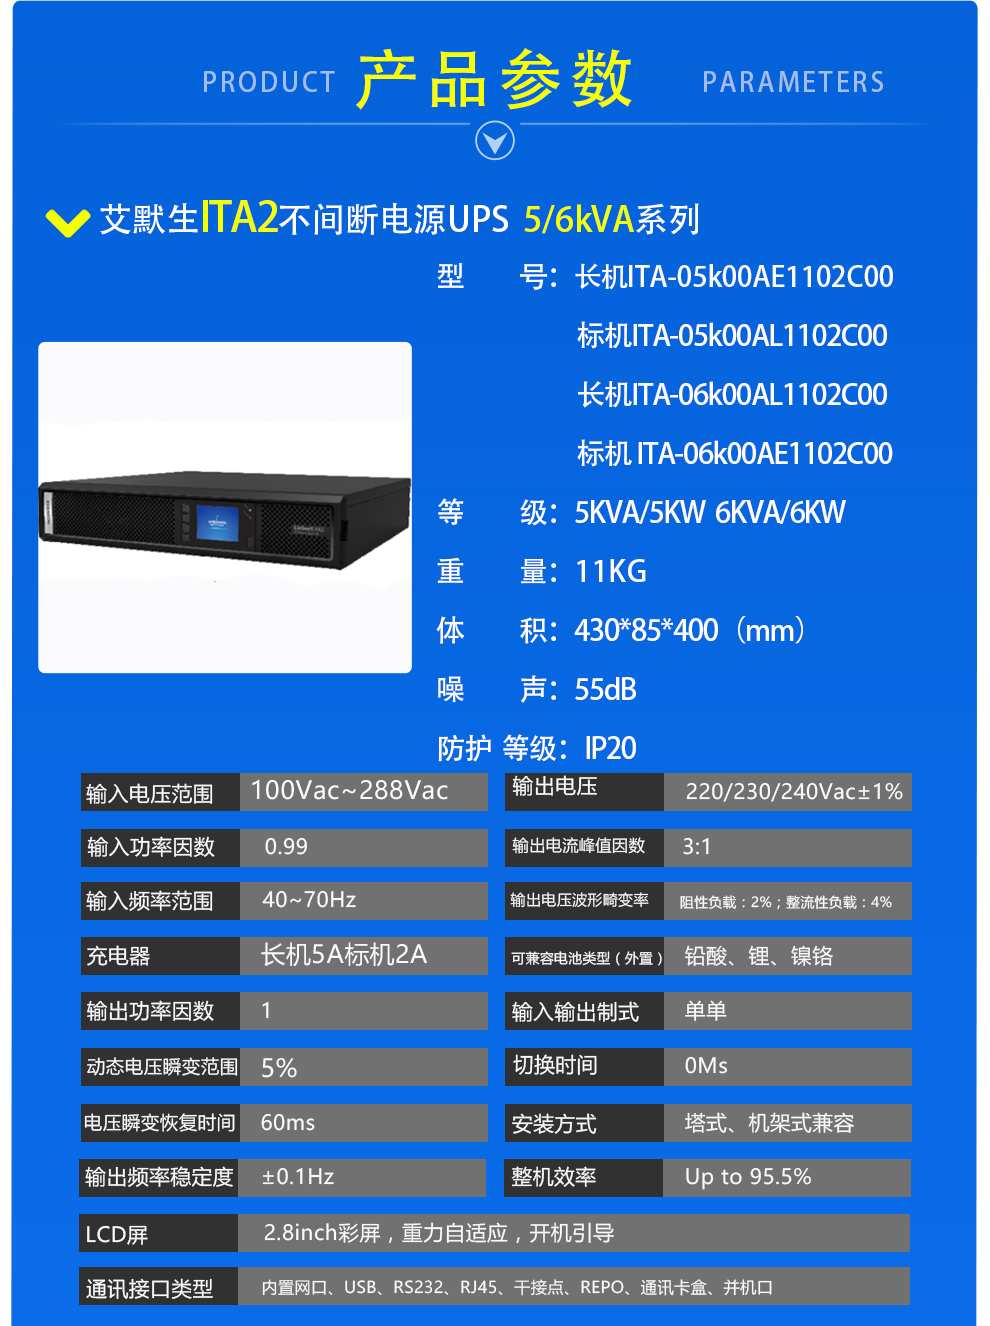 艾默生ups电源20kva主机ITA20KVA机架式上海总代理 ups电源,艾默生ups电源,ups电源20kva,艾默生ups电源厂家,艾默生电源